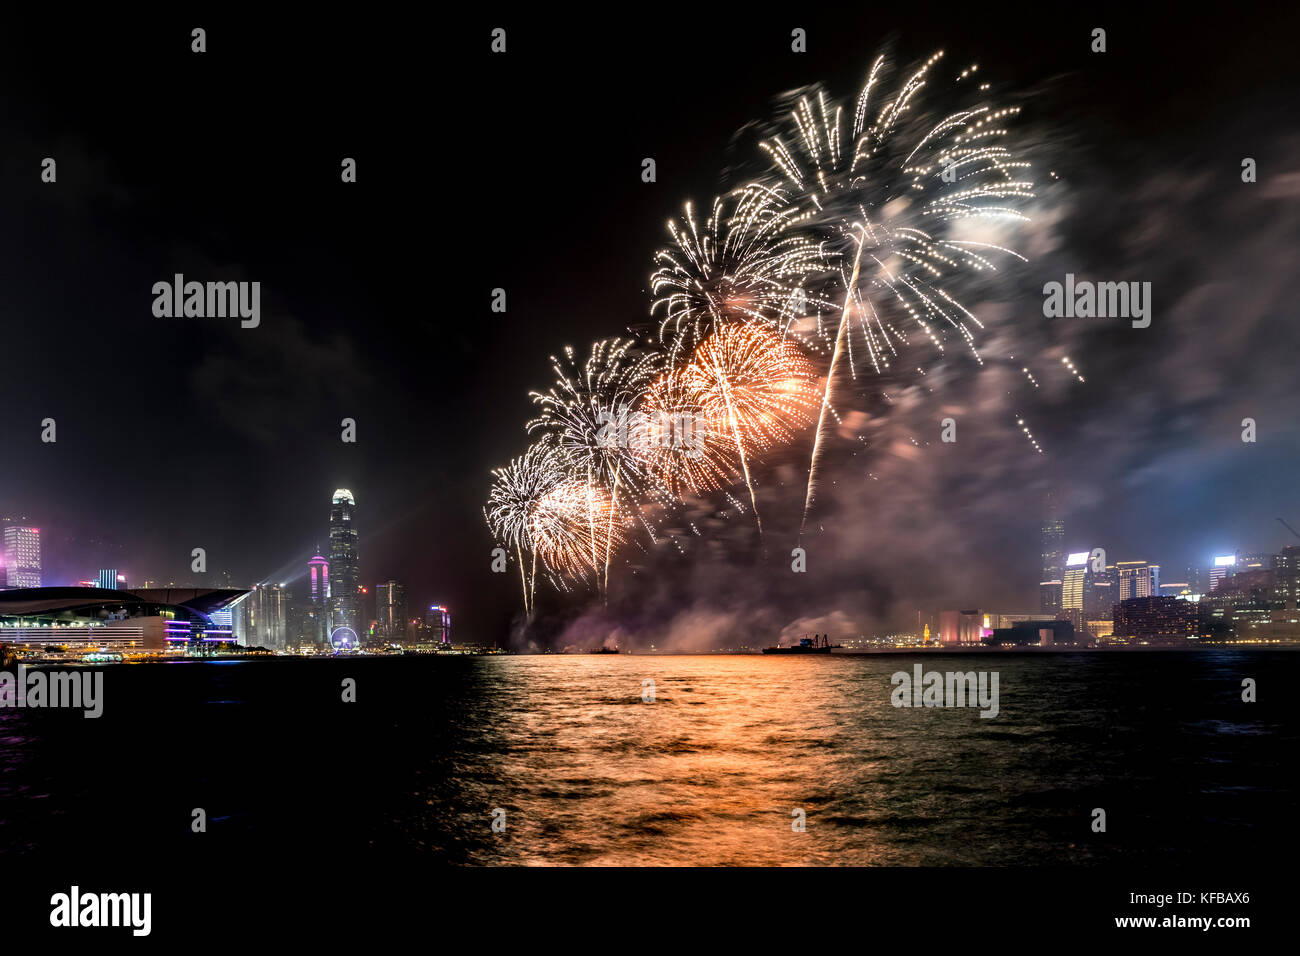 Fireworks display at Victoria harbor of Hong Kong Stock Photo